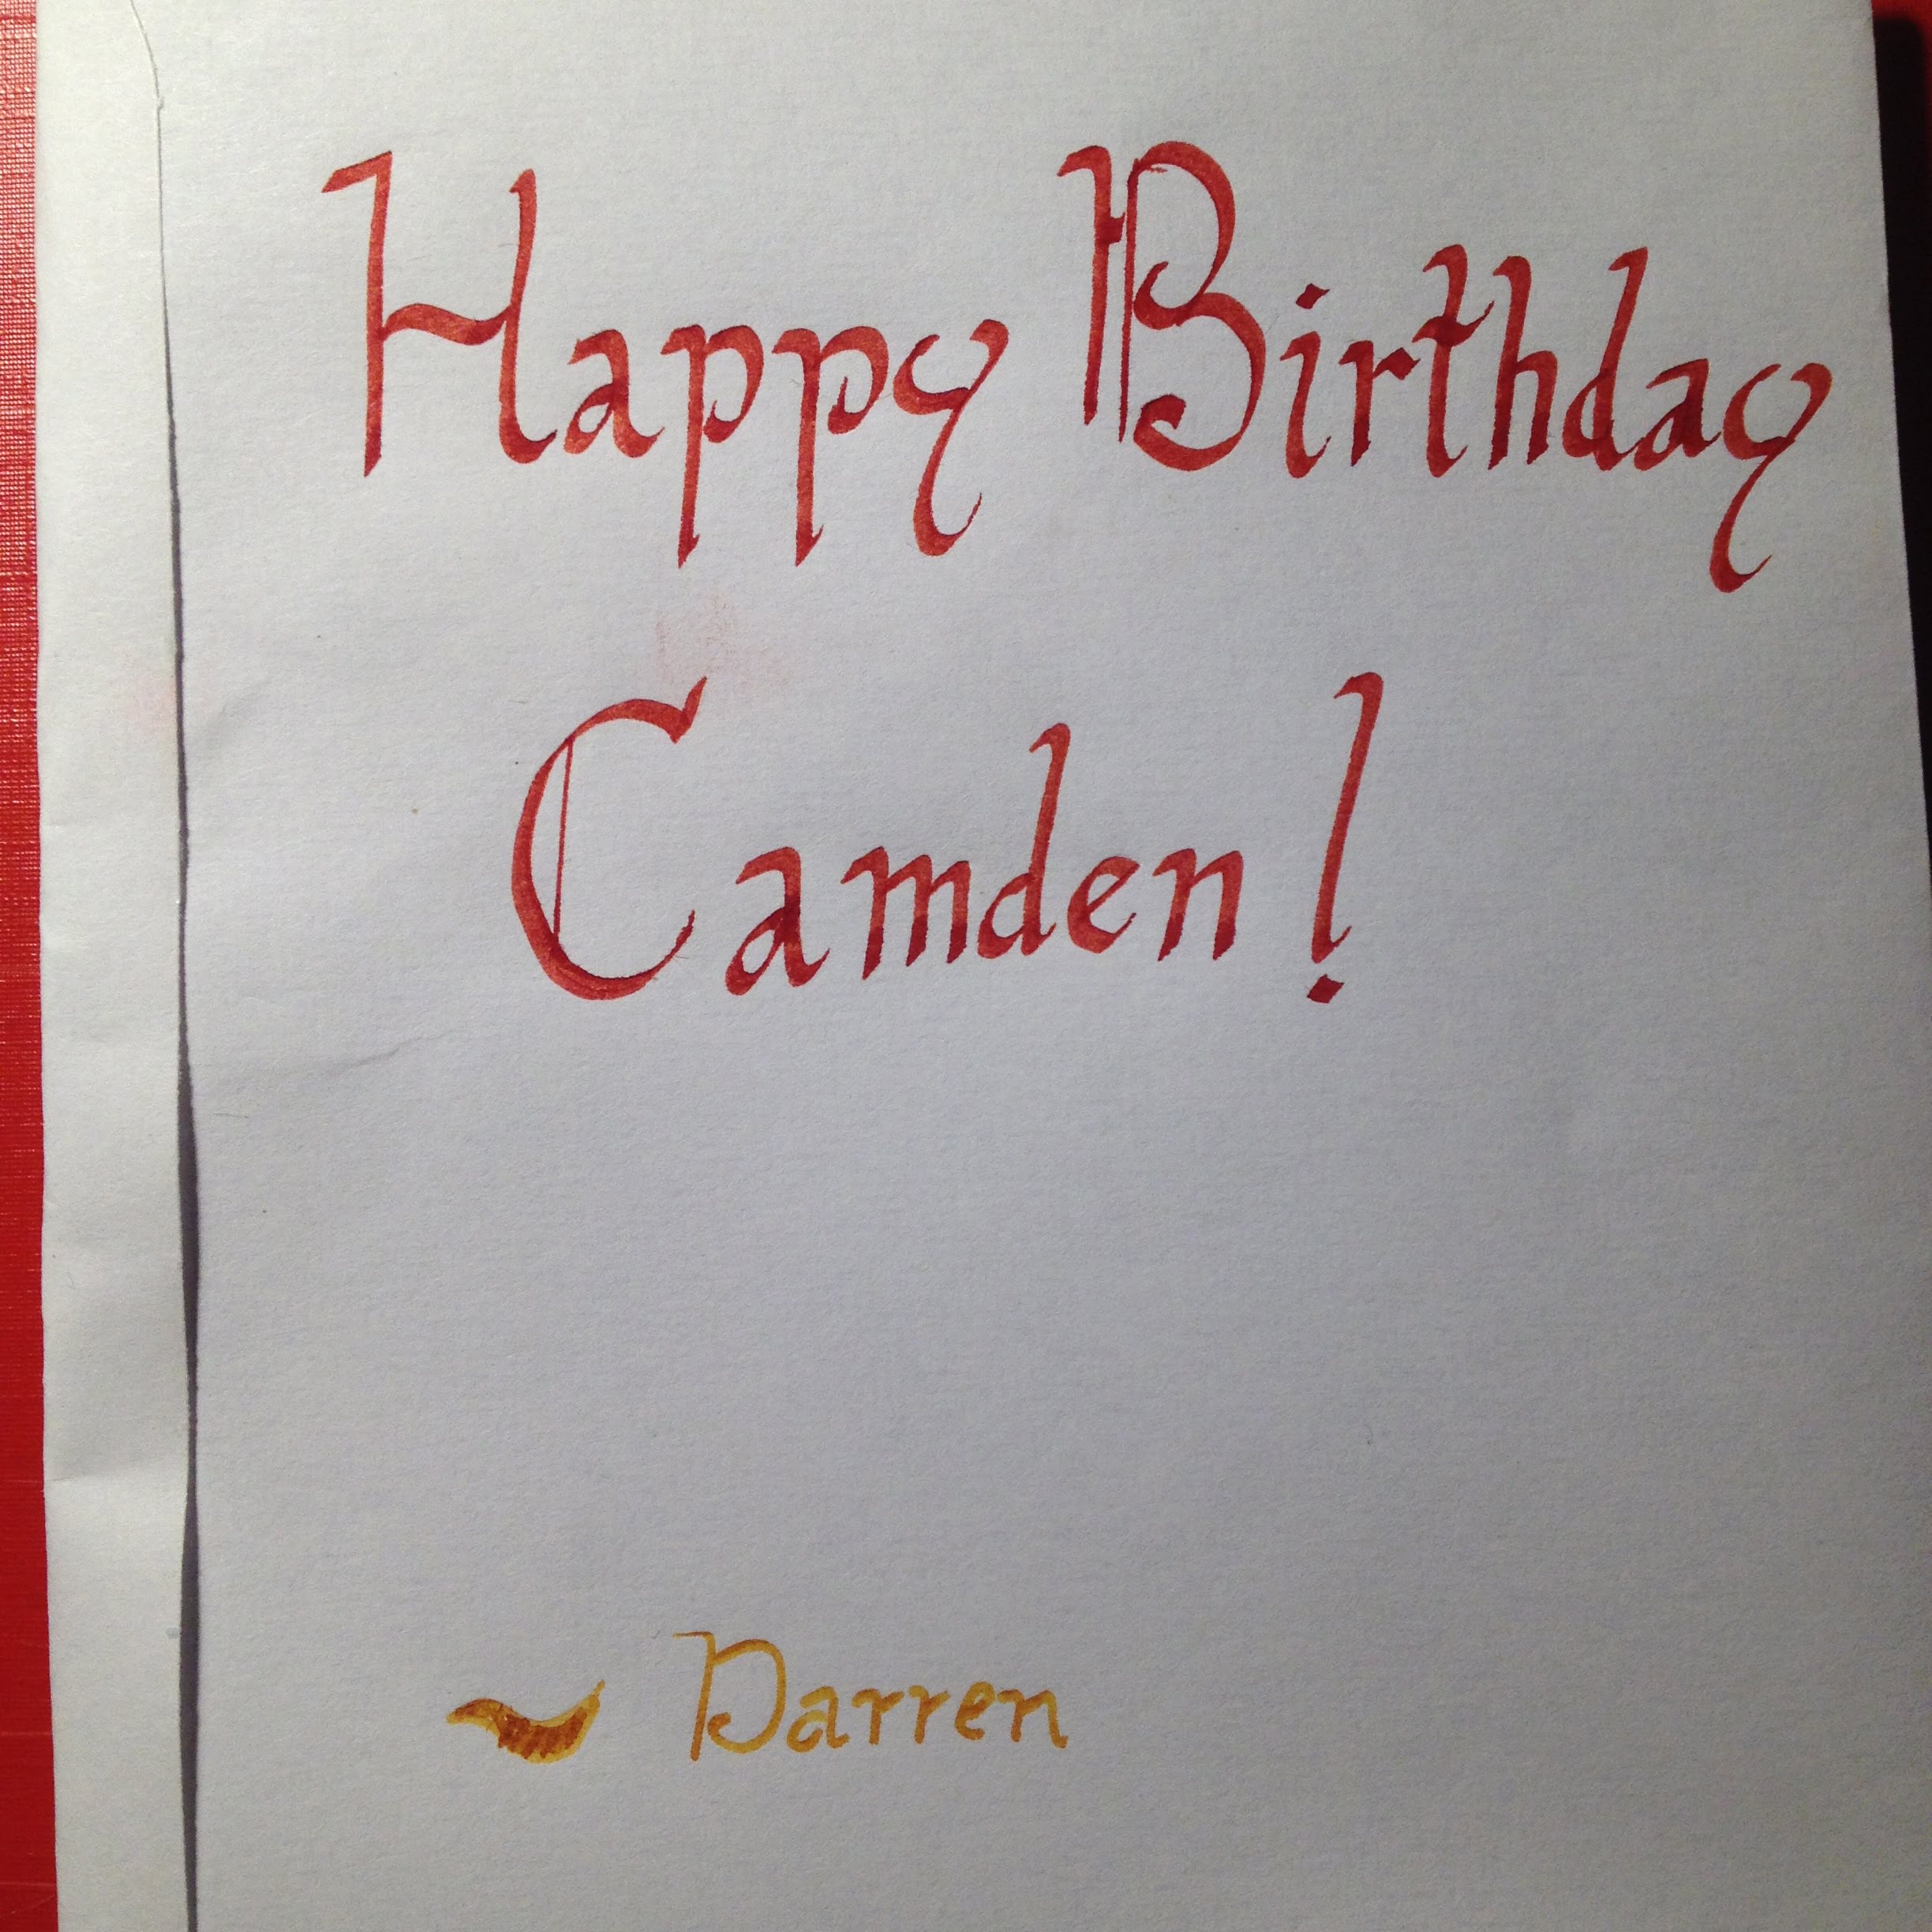 Happy Birthday Camden